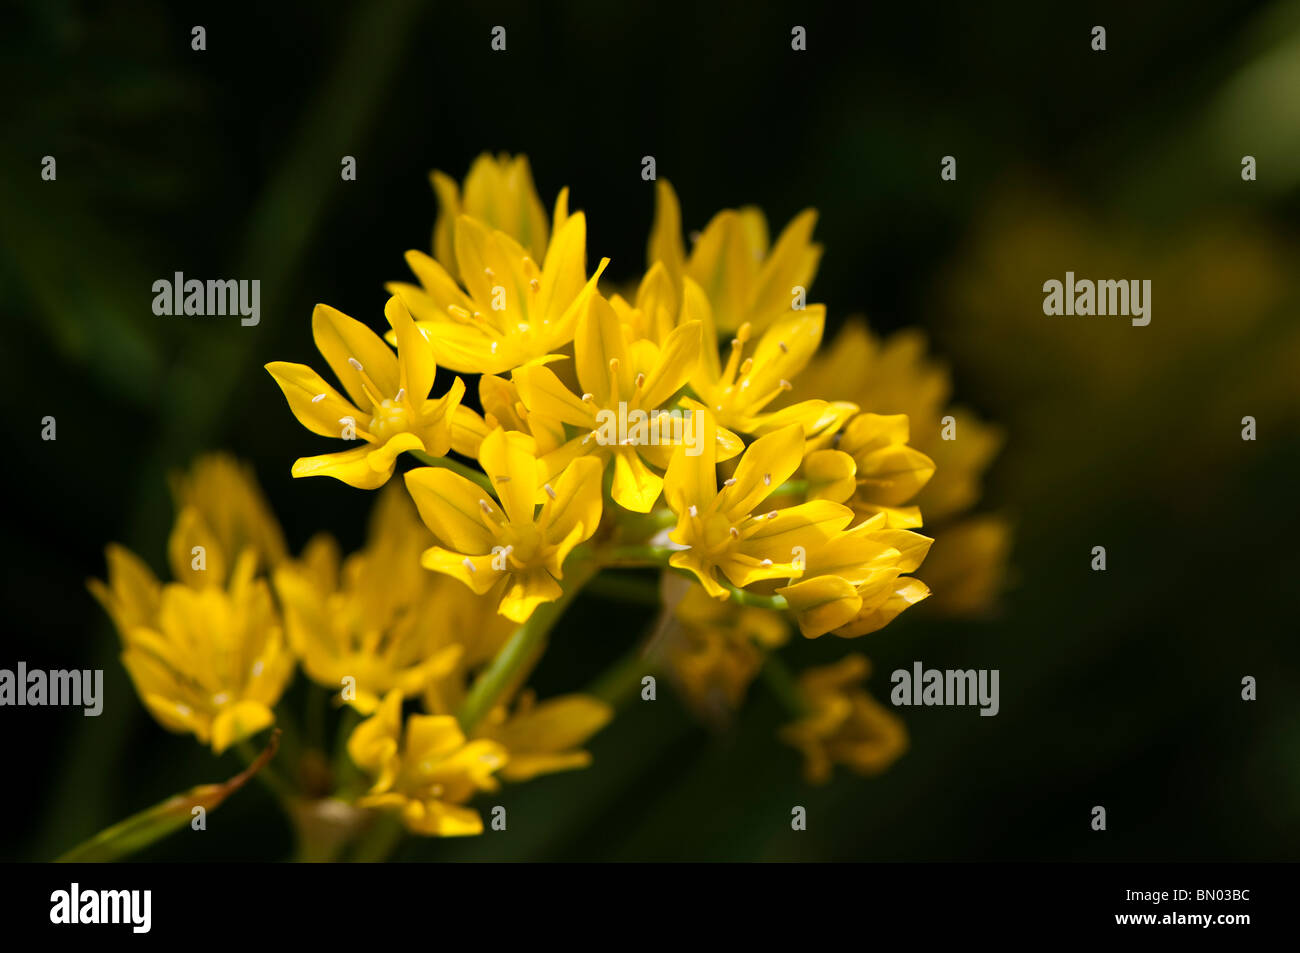 Allium Moly, goldene Knoblauch oder Lily Leek, blüht im späten Frühjahr Stockfoto